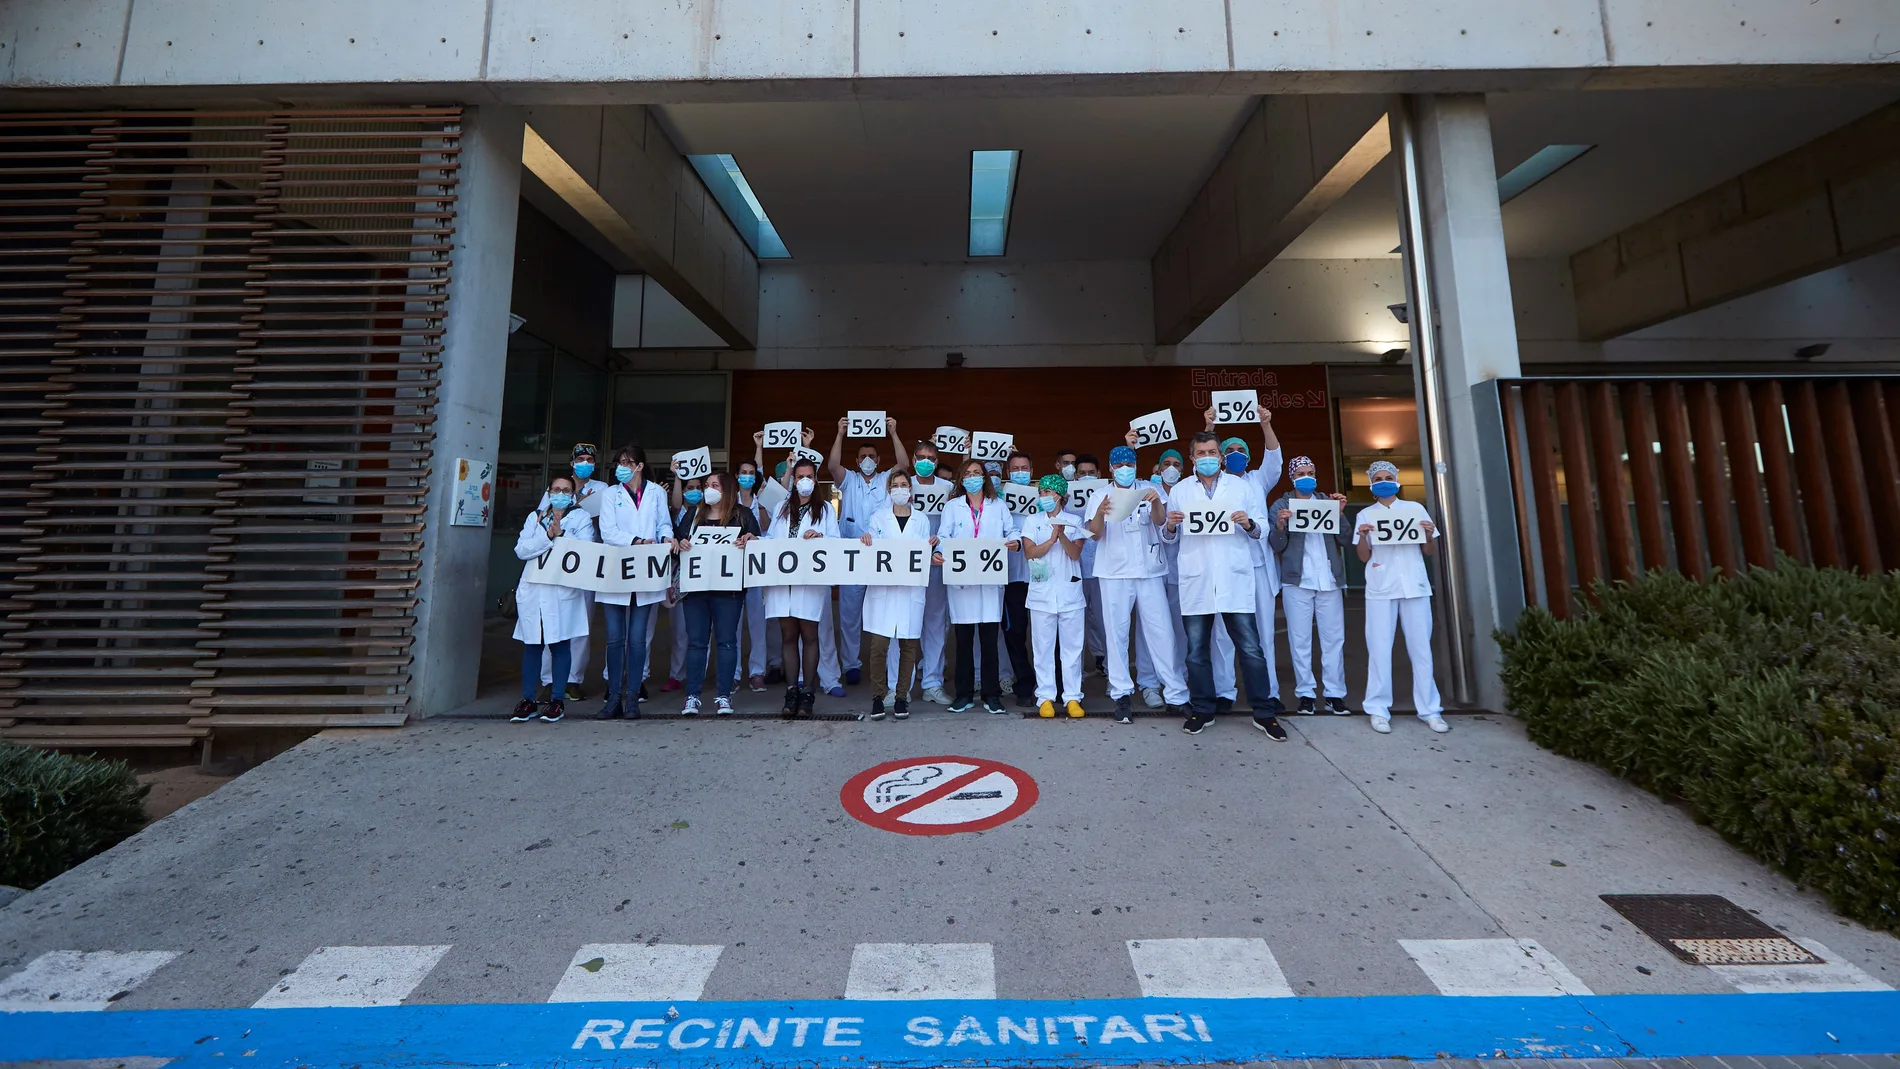 El personal sanitario del Hospital de Sant Joan Despí Moisès Broggi participa en una concentración para reclamar el retorno del 5% en sus sueldos